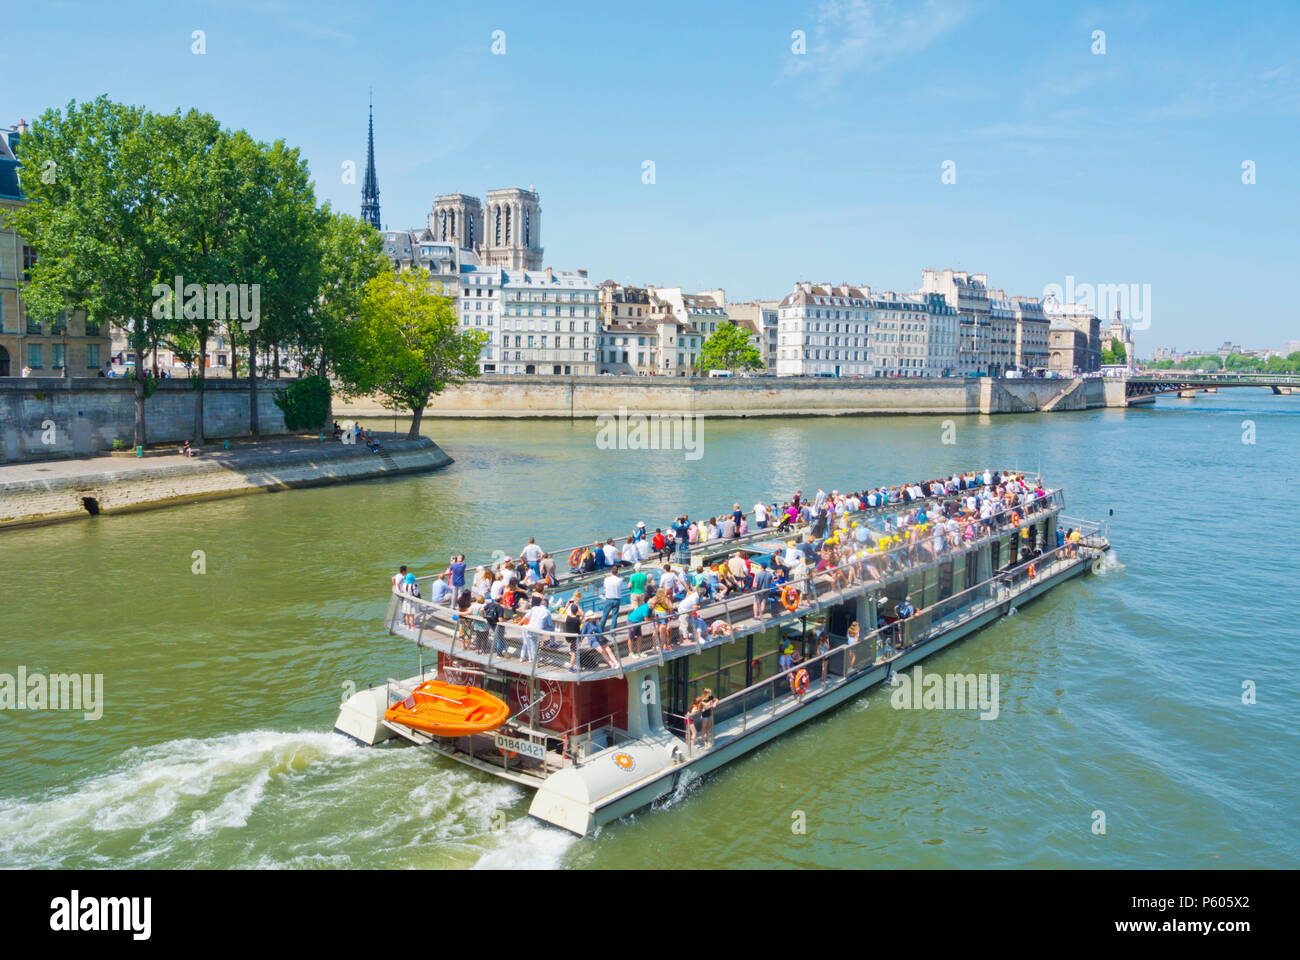 Bateaux Parisiens sightseeing tour Boot, vor der Ile de la Cité und Notre Dame, Paris, Frankreich Stockfoto